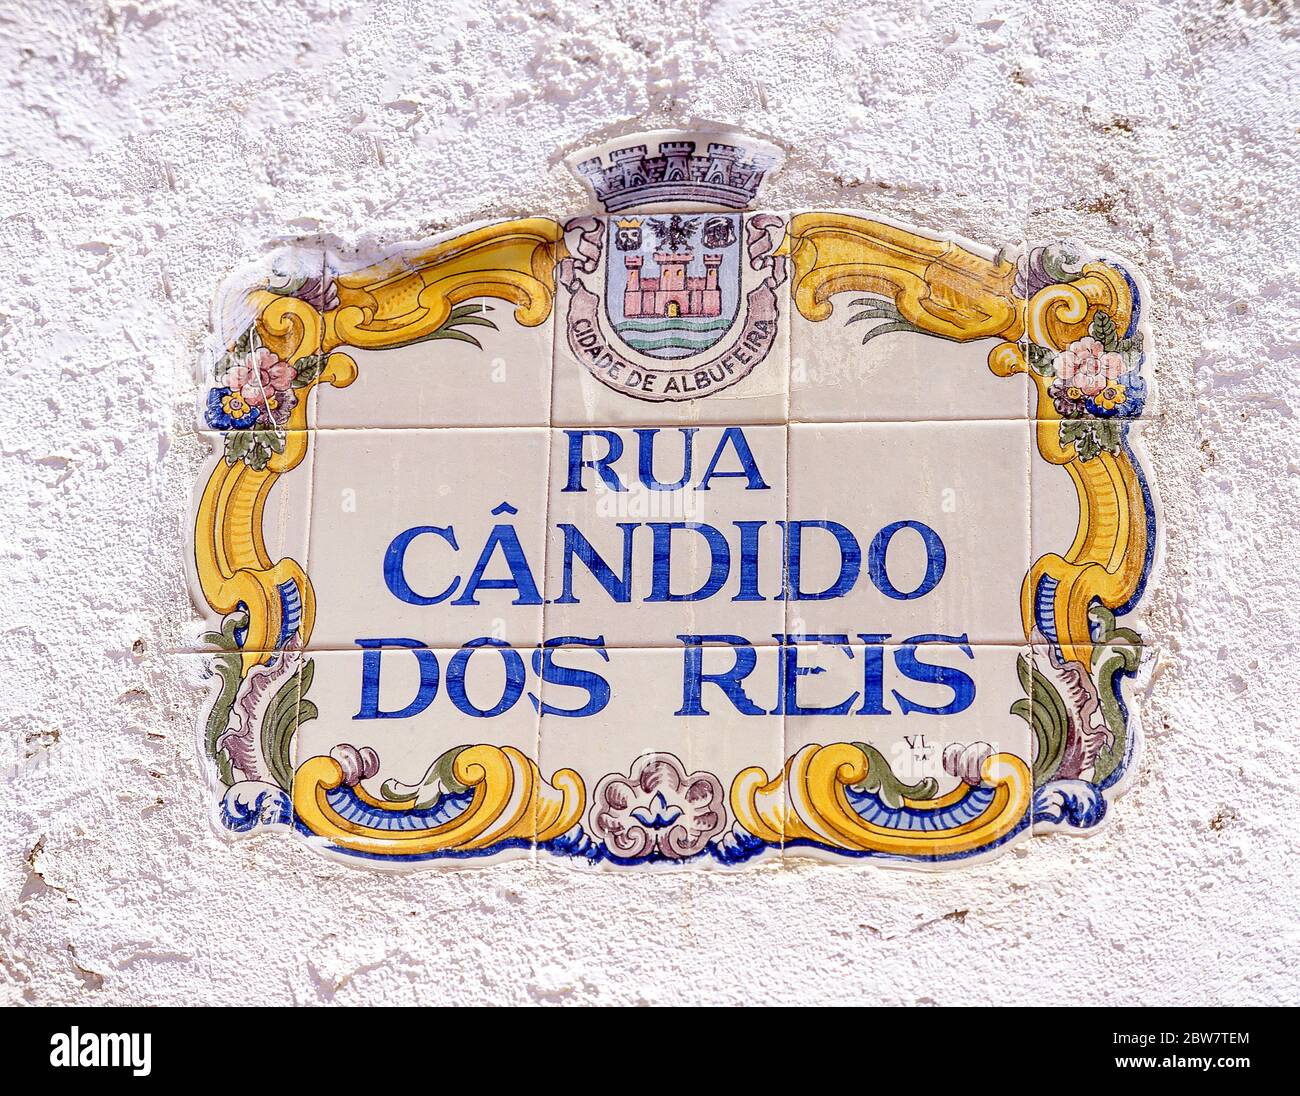 Ceramic street sign, Rua Candido Dos Reis, Albufeira, Algarve Region, Portugal Stock Photo